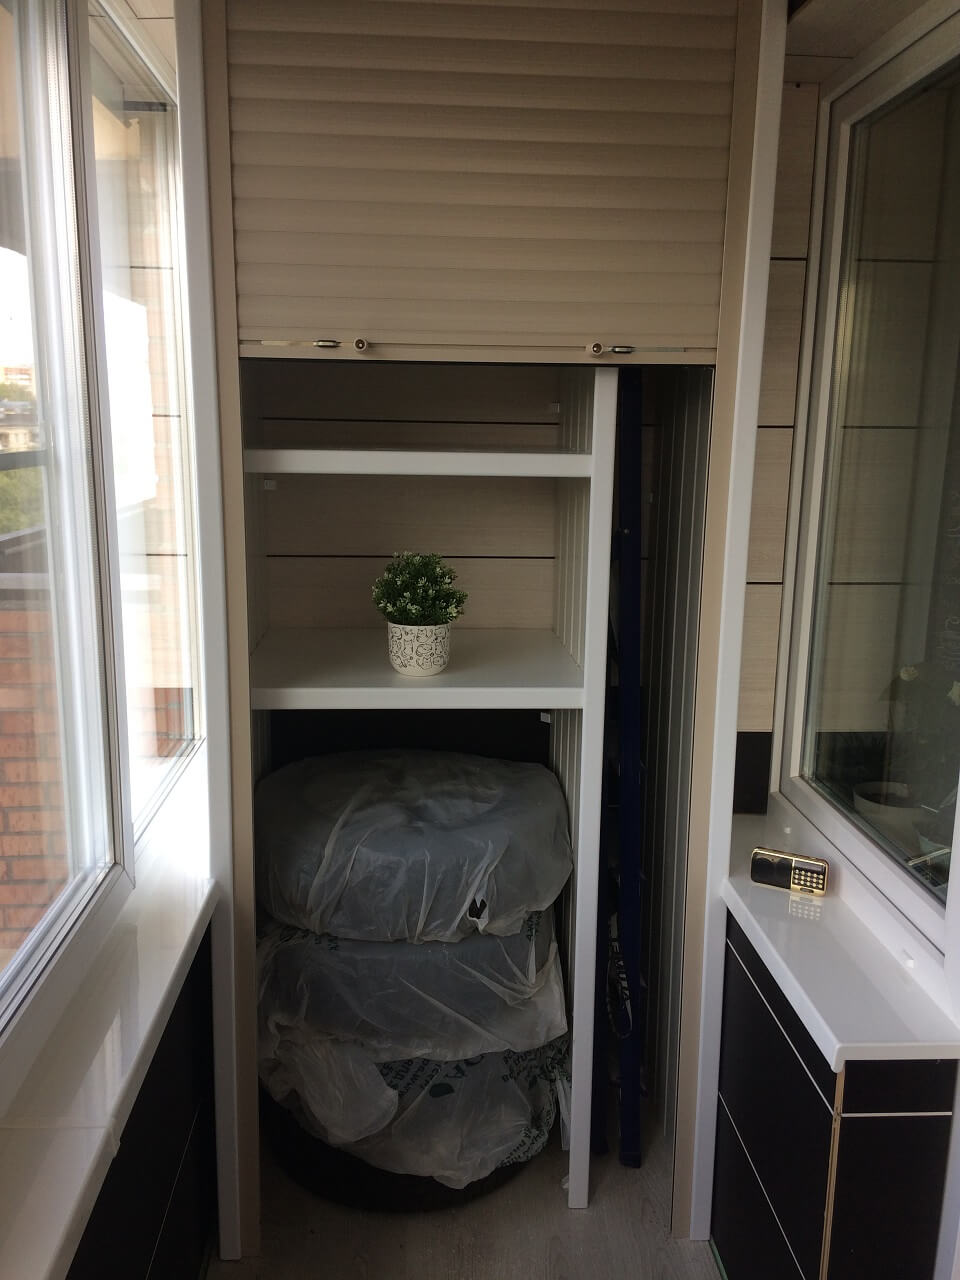 шкаф на балкон для хранения заготовок чтобы не померзли